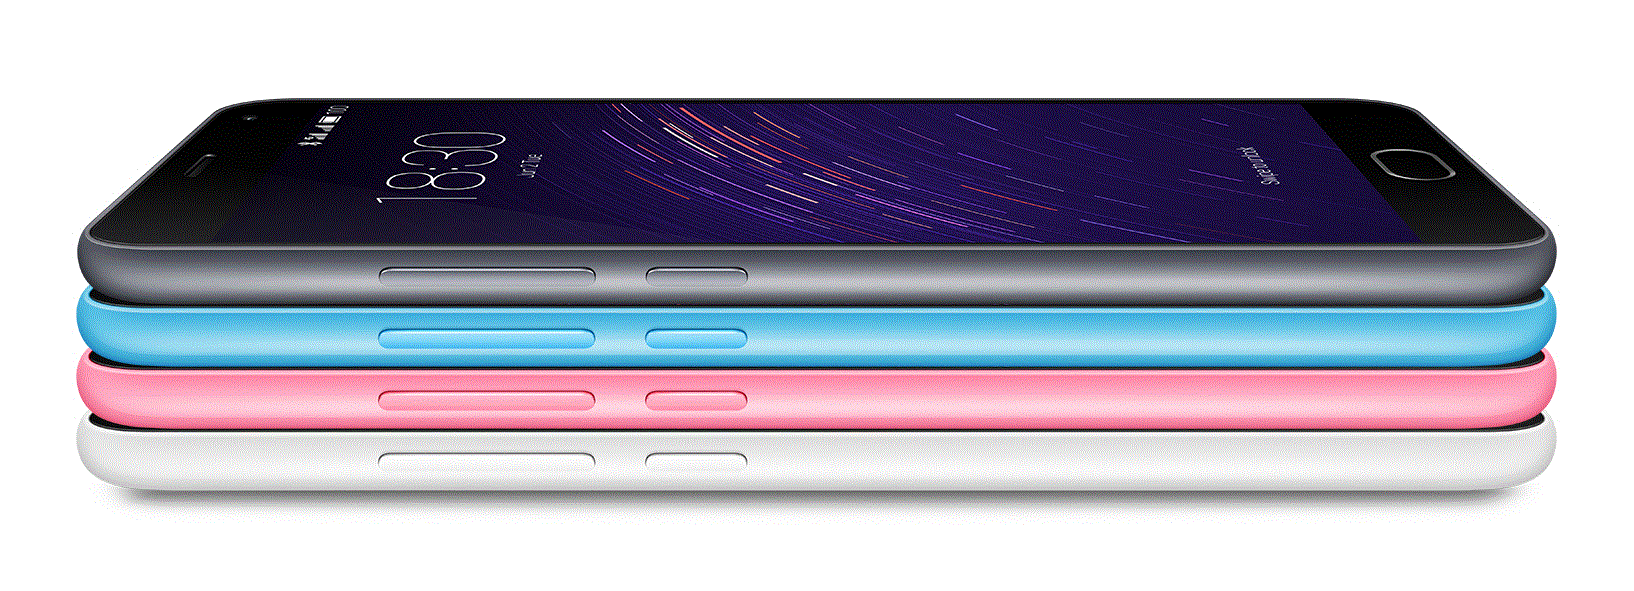 Meizu M2 Note, China Handy , 5.5 Zoll FHD, Gorilla Glass 3, Antutu Benchmark Score, China Smartphone, ohne Zoll, zollfrei, PayPal, Angebot aus Deutschland,